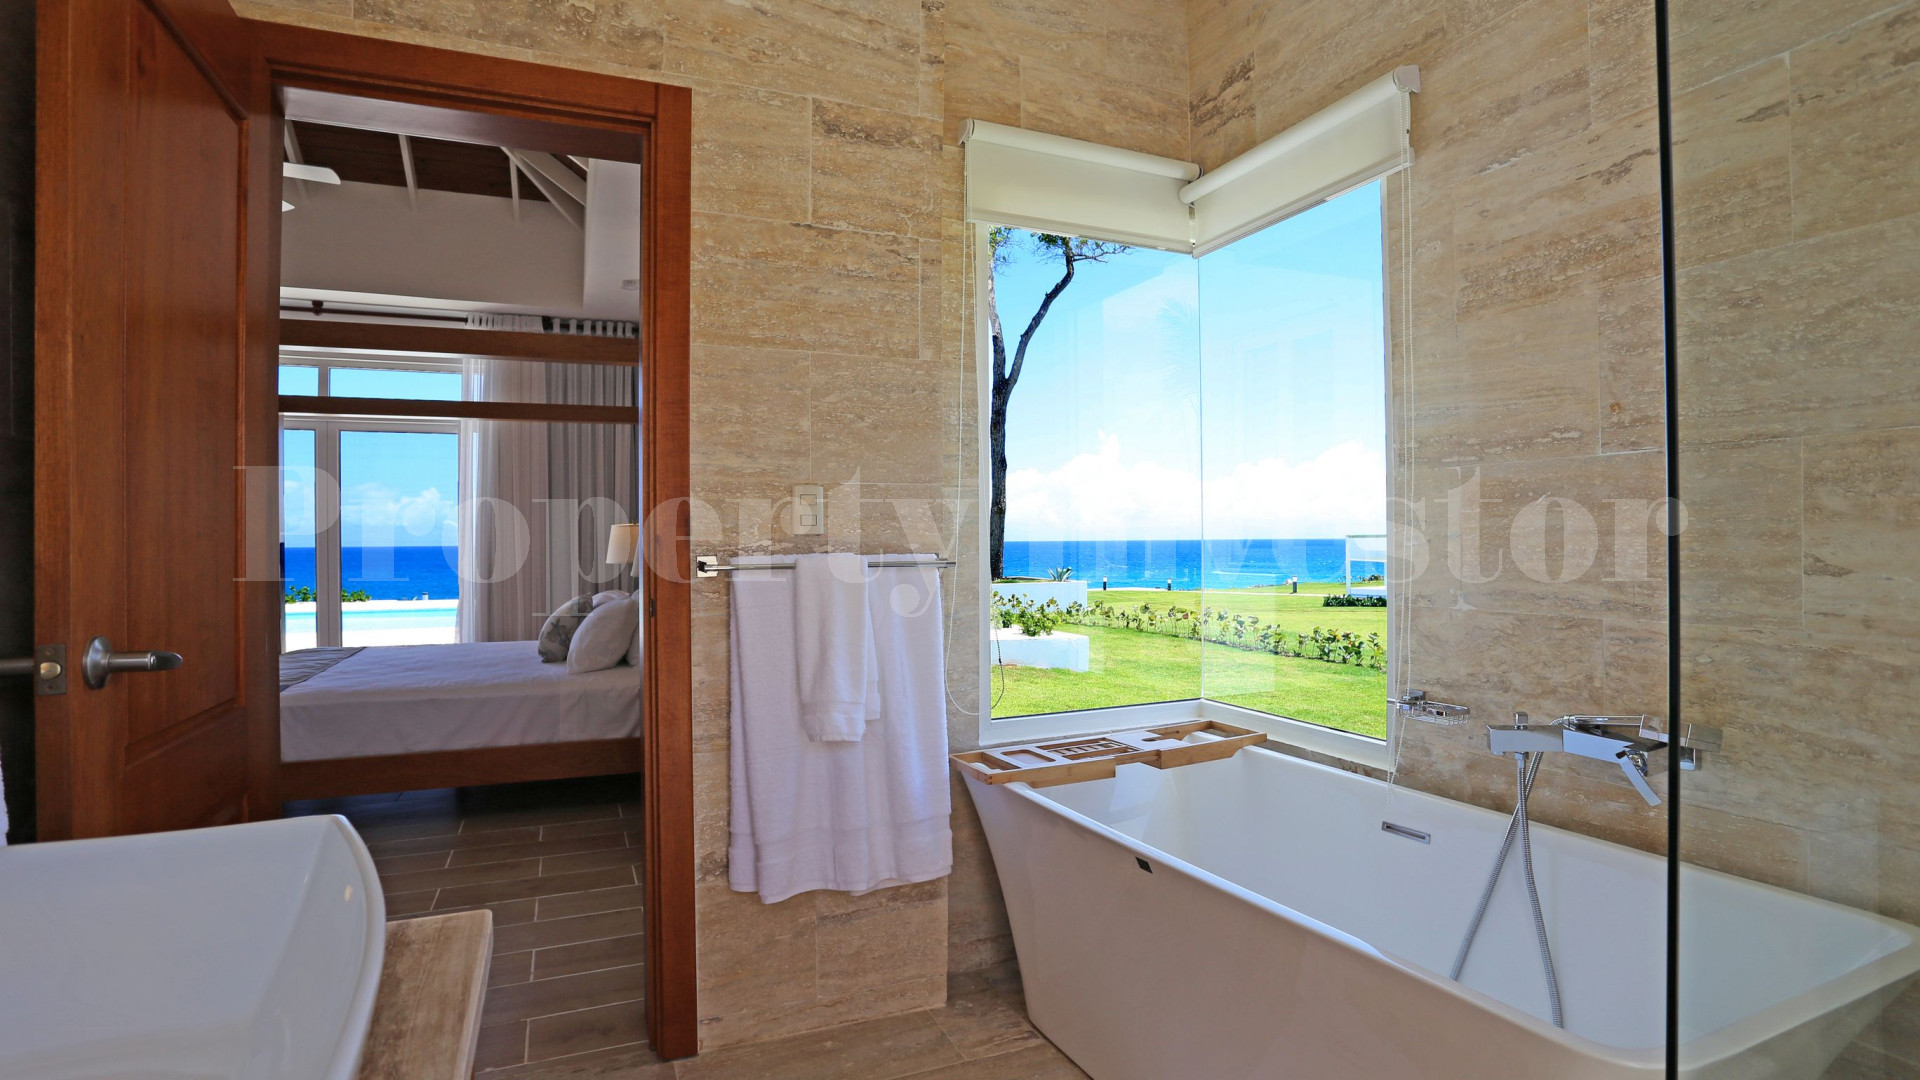 Вилла с 3 спальнями на берегу моря в Доминиканской Республике с финансированием на 30 лет (Вилла 1)